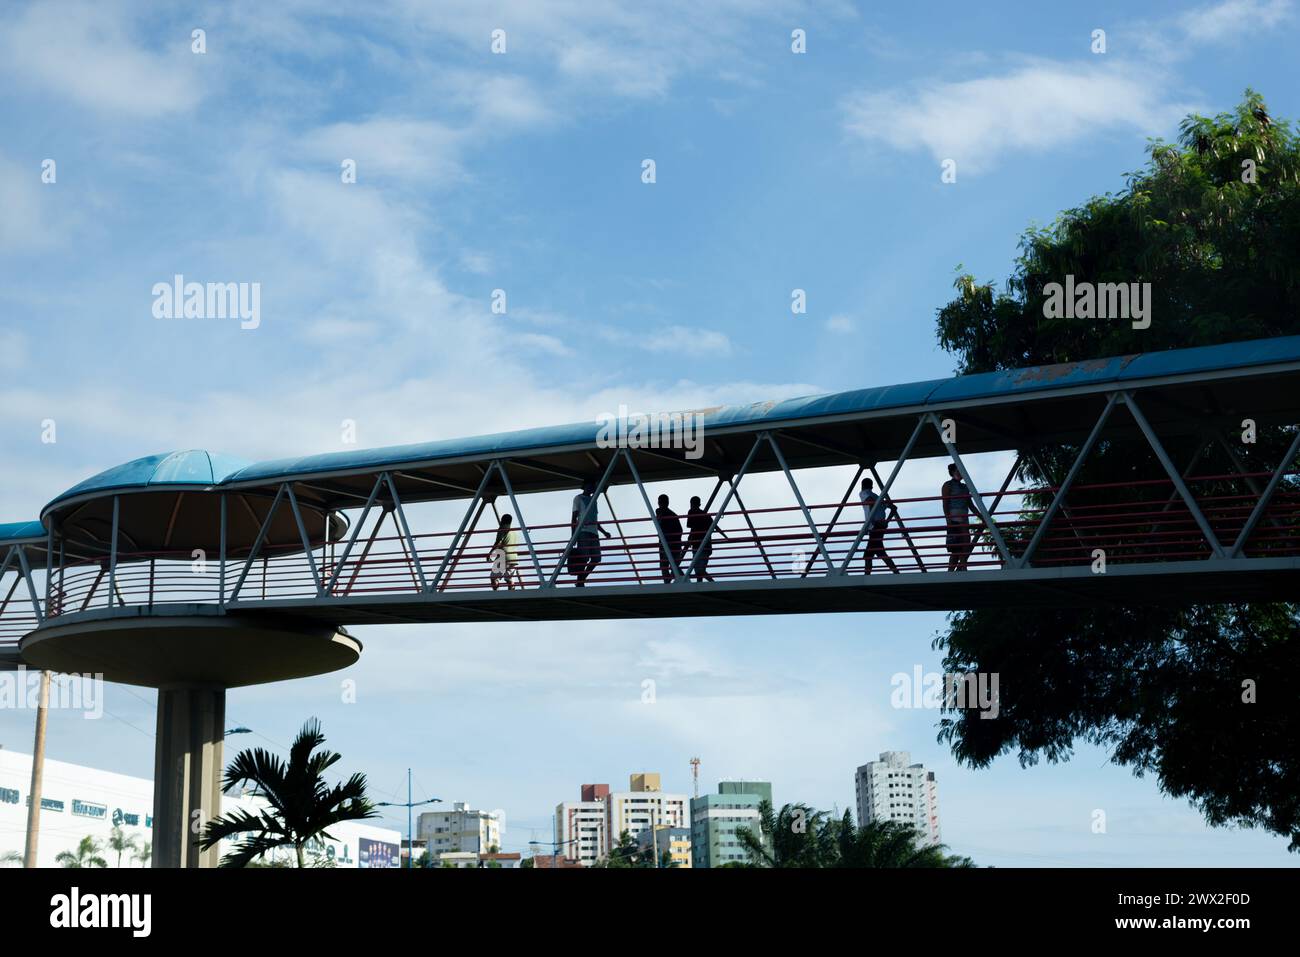 Salvador, Bahia, Brasile - 19 dicembre 2021: Si vedono pedoni che attraversano un passaggio pedonale urbano nella città di Salvador, Bahia. Foto Stock